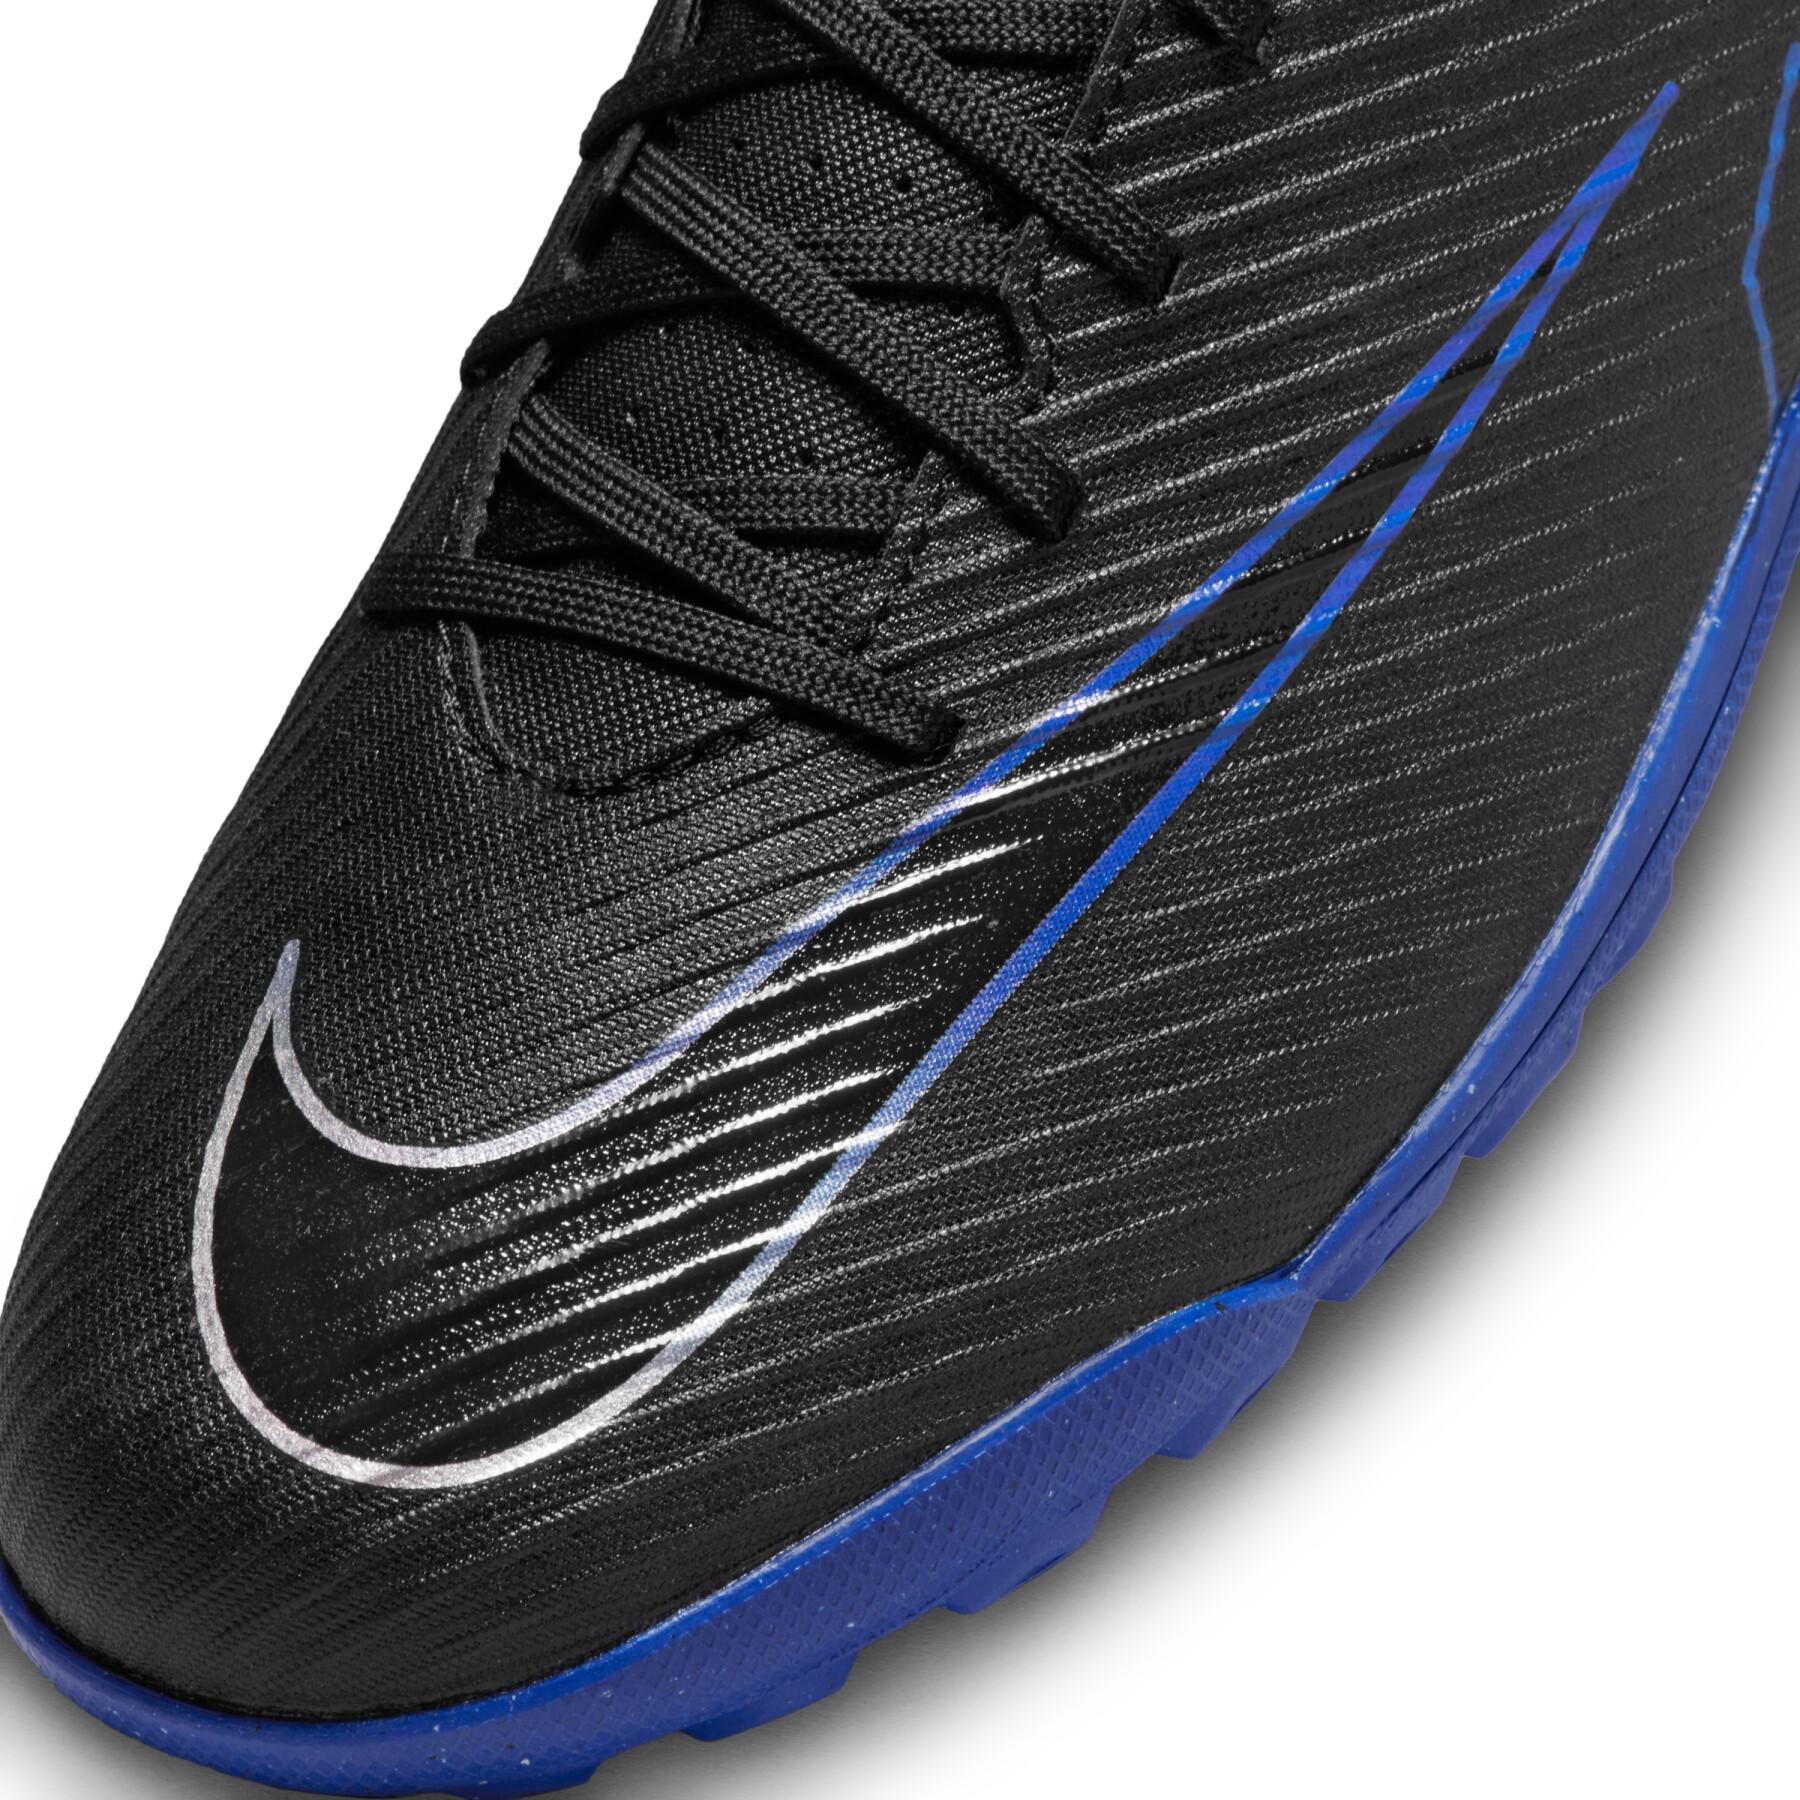 Sapatos de futebol Nike Mercurial Vapor 15 Club Turf